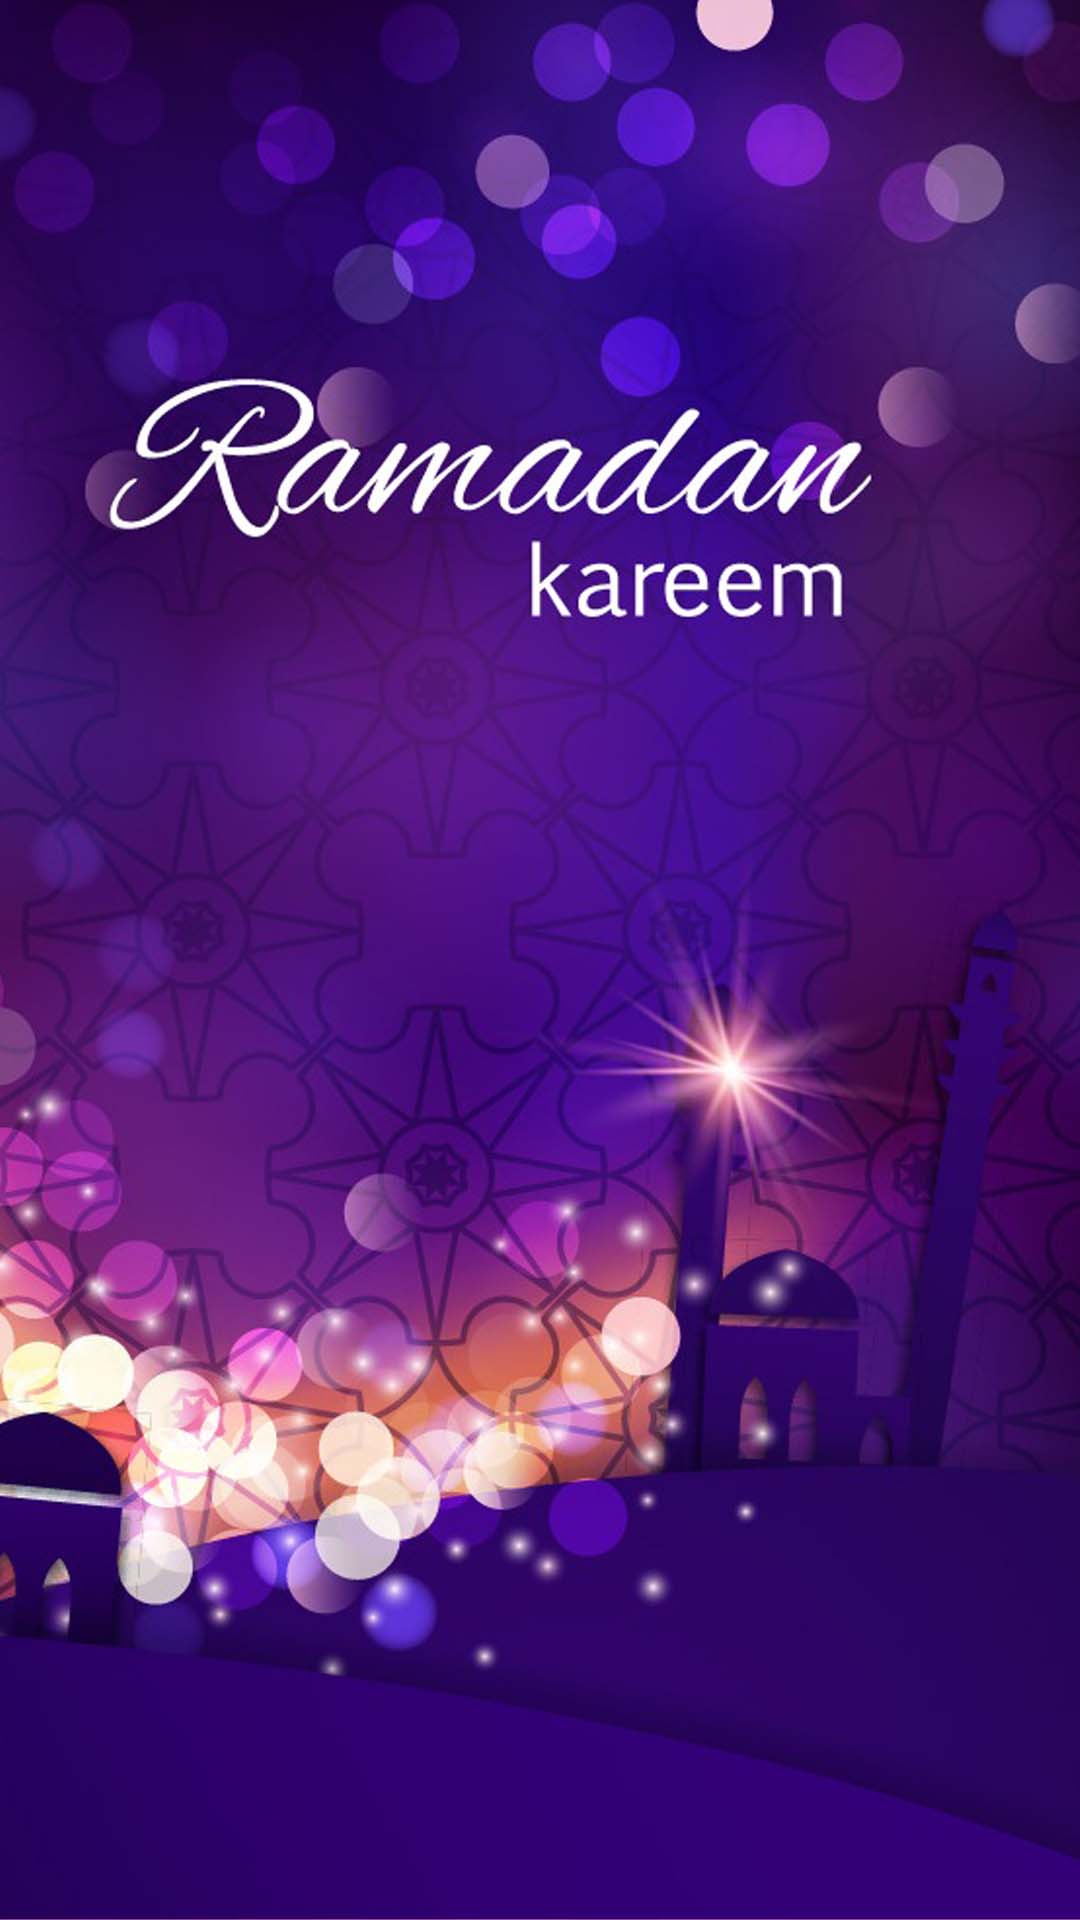 صور شهر رمضان 2020 جديدة احدث خلفيات رمضان 1441 موقع محتوى